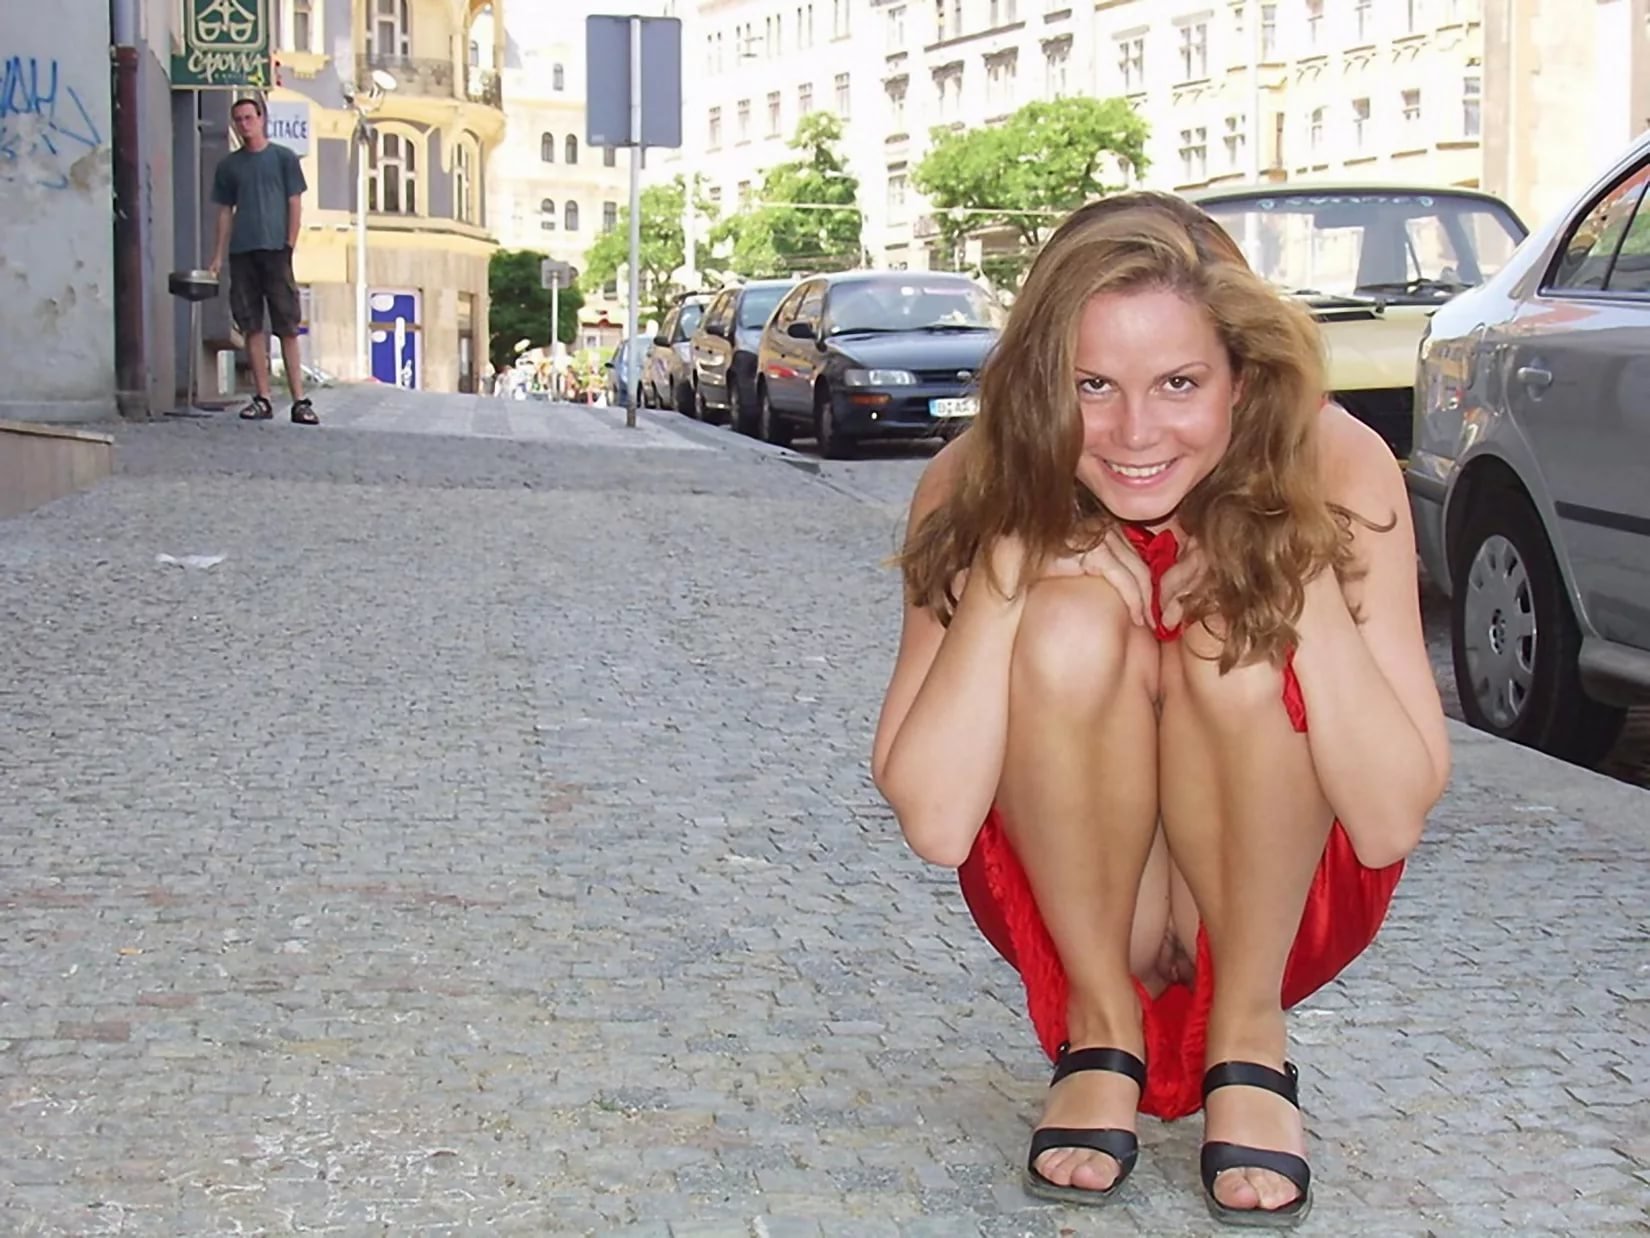 Студентка устроила эротическую фотосессию прямо на улице